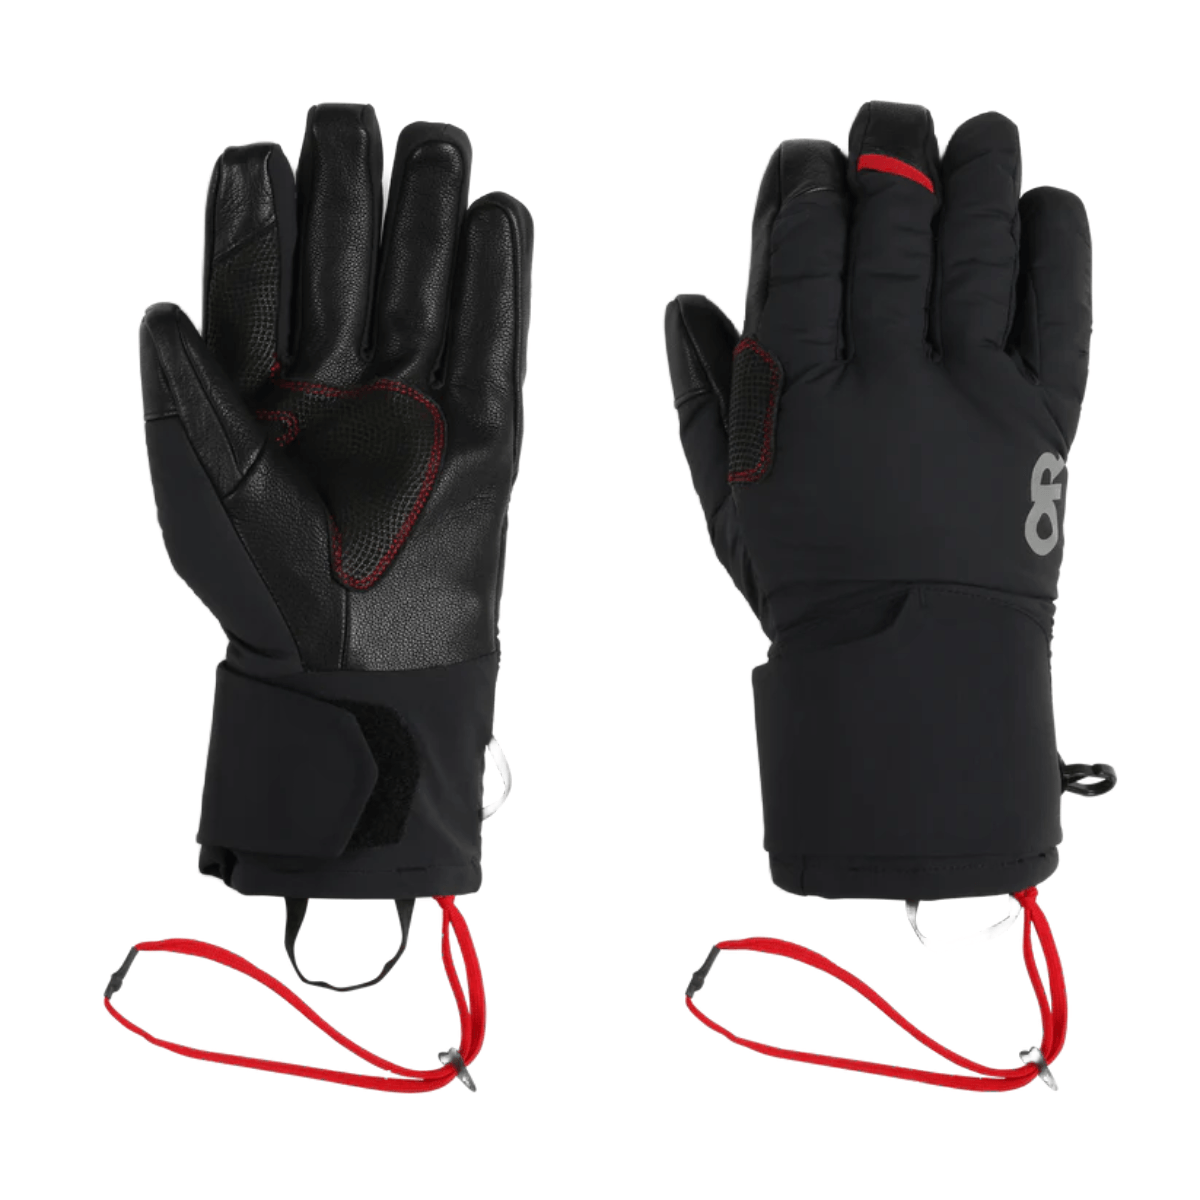 Outdoor Research Deviator Pro Glove - Men's - Als.com